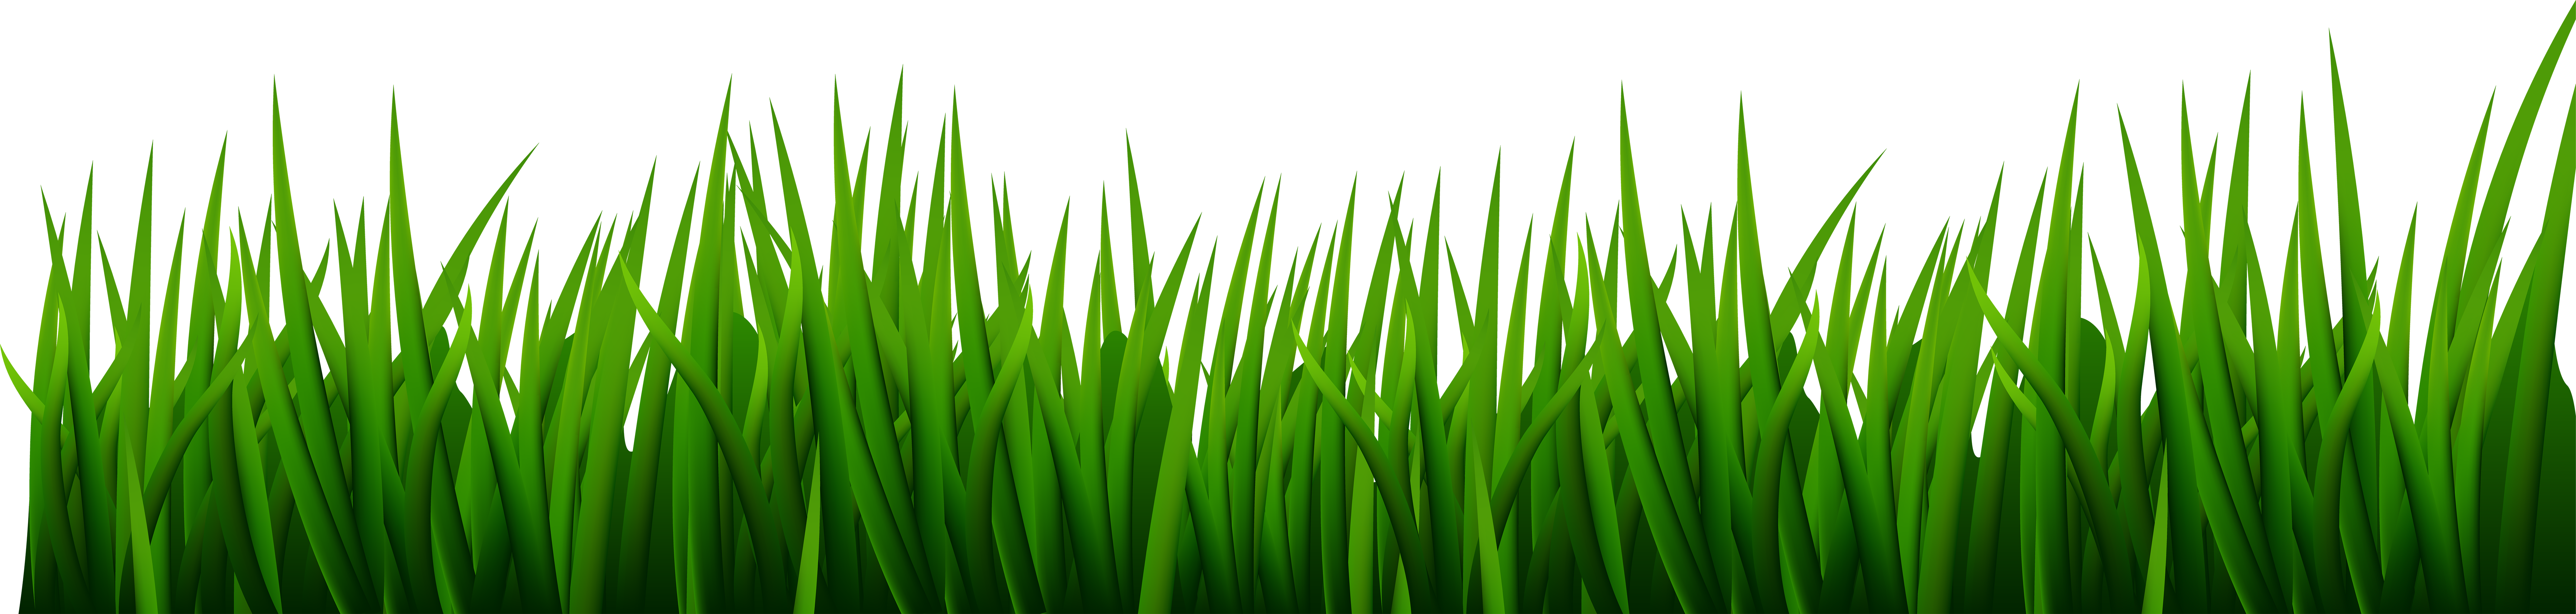 Green Lawn Green Grass Line Art